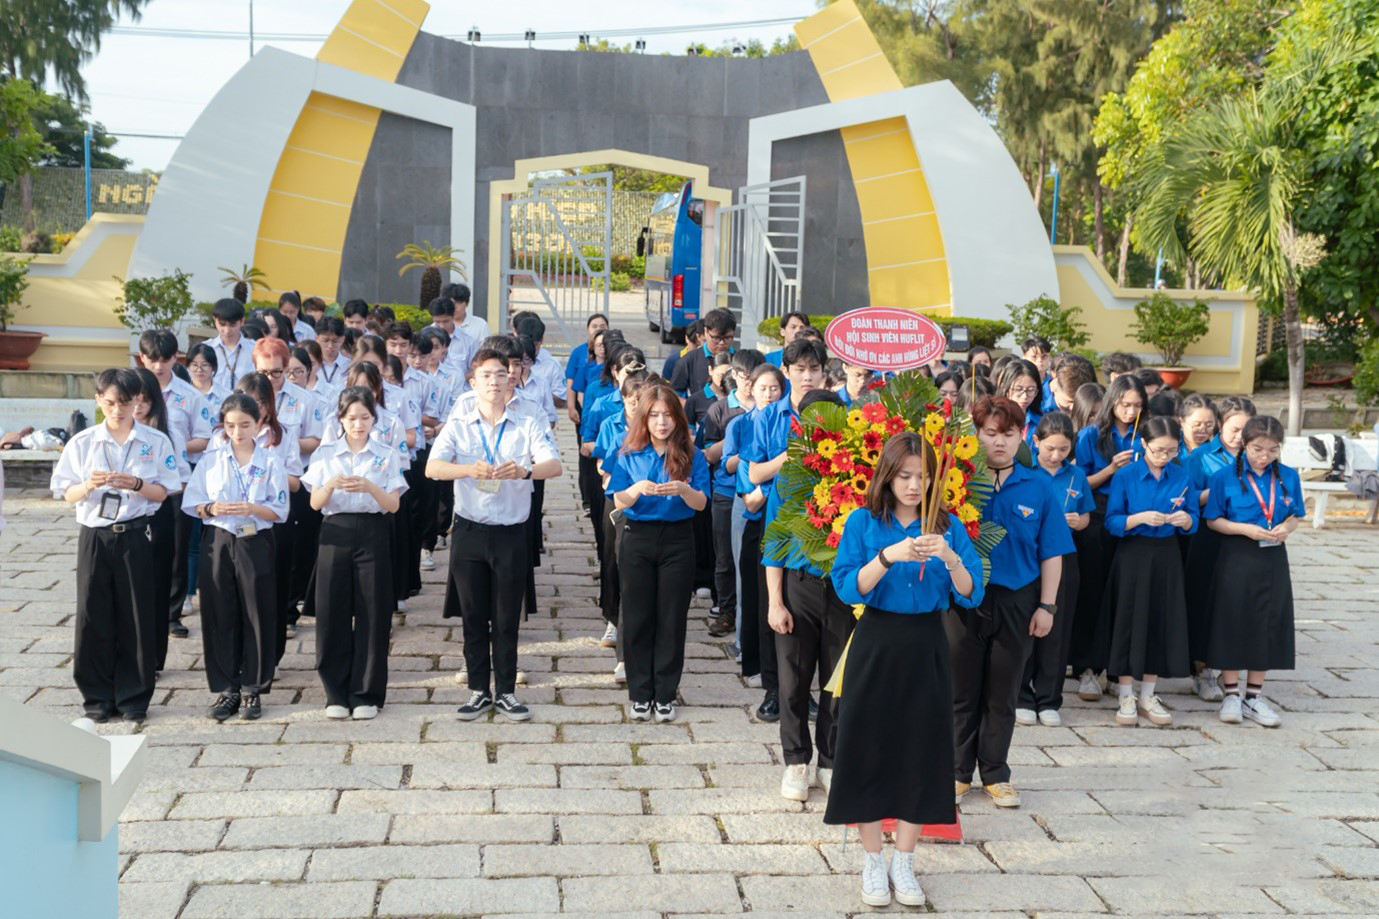 Trong chương trình tập huấn, cán bộ Đoàn - Hội đã cùng nhau tham gia “Hành trình về nguồn” tại Nghĩa trang Liệt sỹ Rừng Sác để dâng hương, tưởng nhớ những anh hùng có công với cách mạng, những người đã hy sinh để mang lại độc lập, tự do và hạnh phúc cho mỗi người dân Việt Nam.